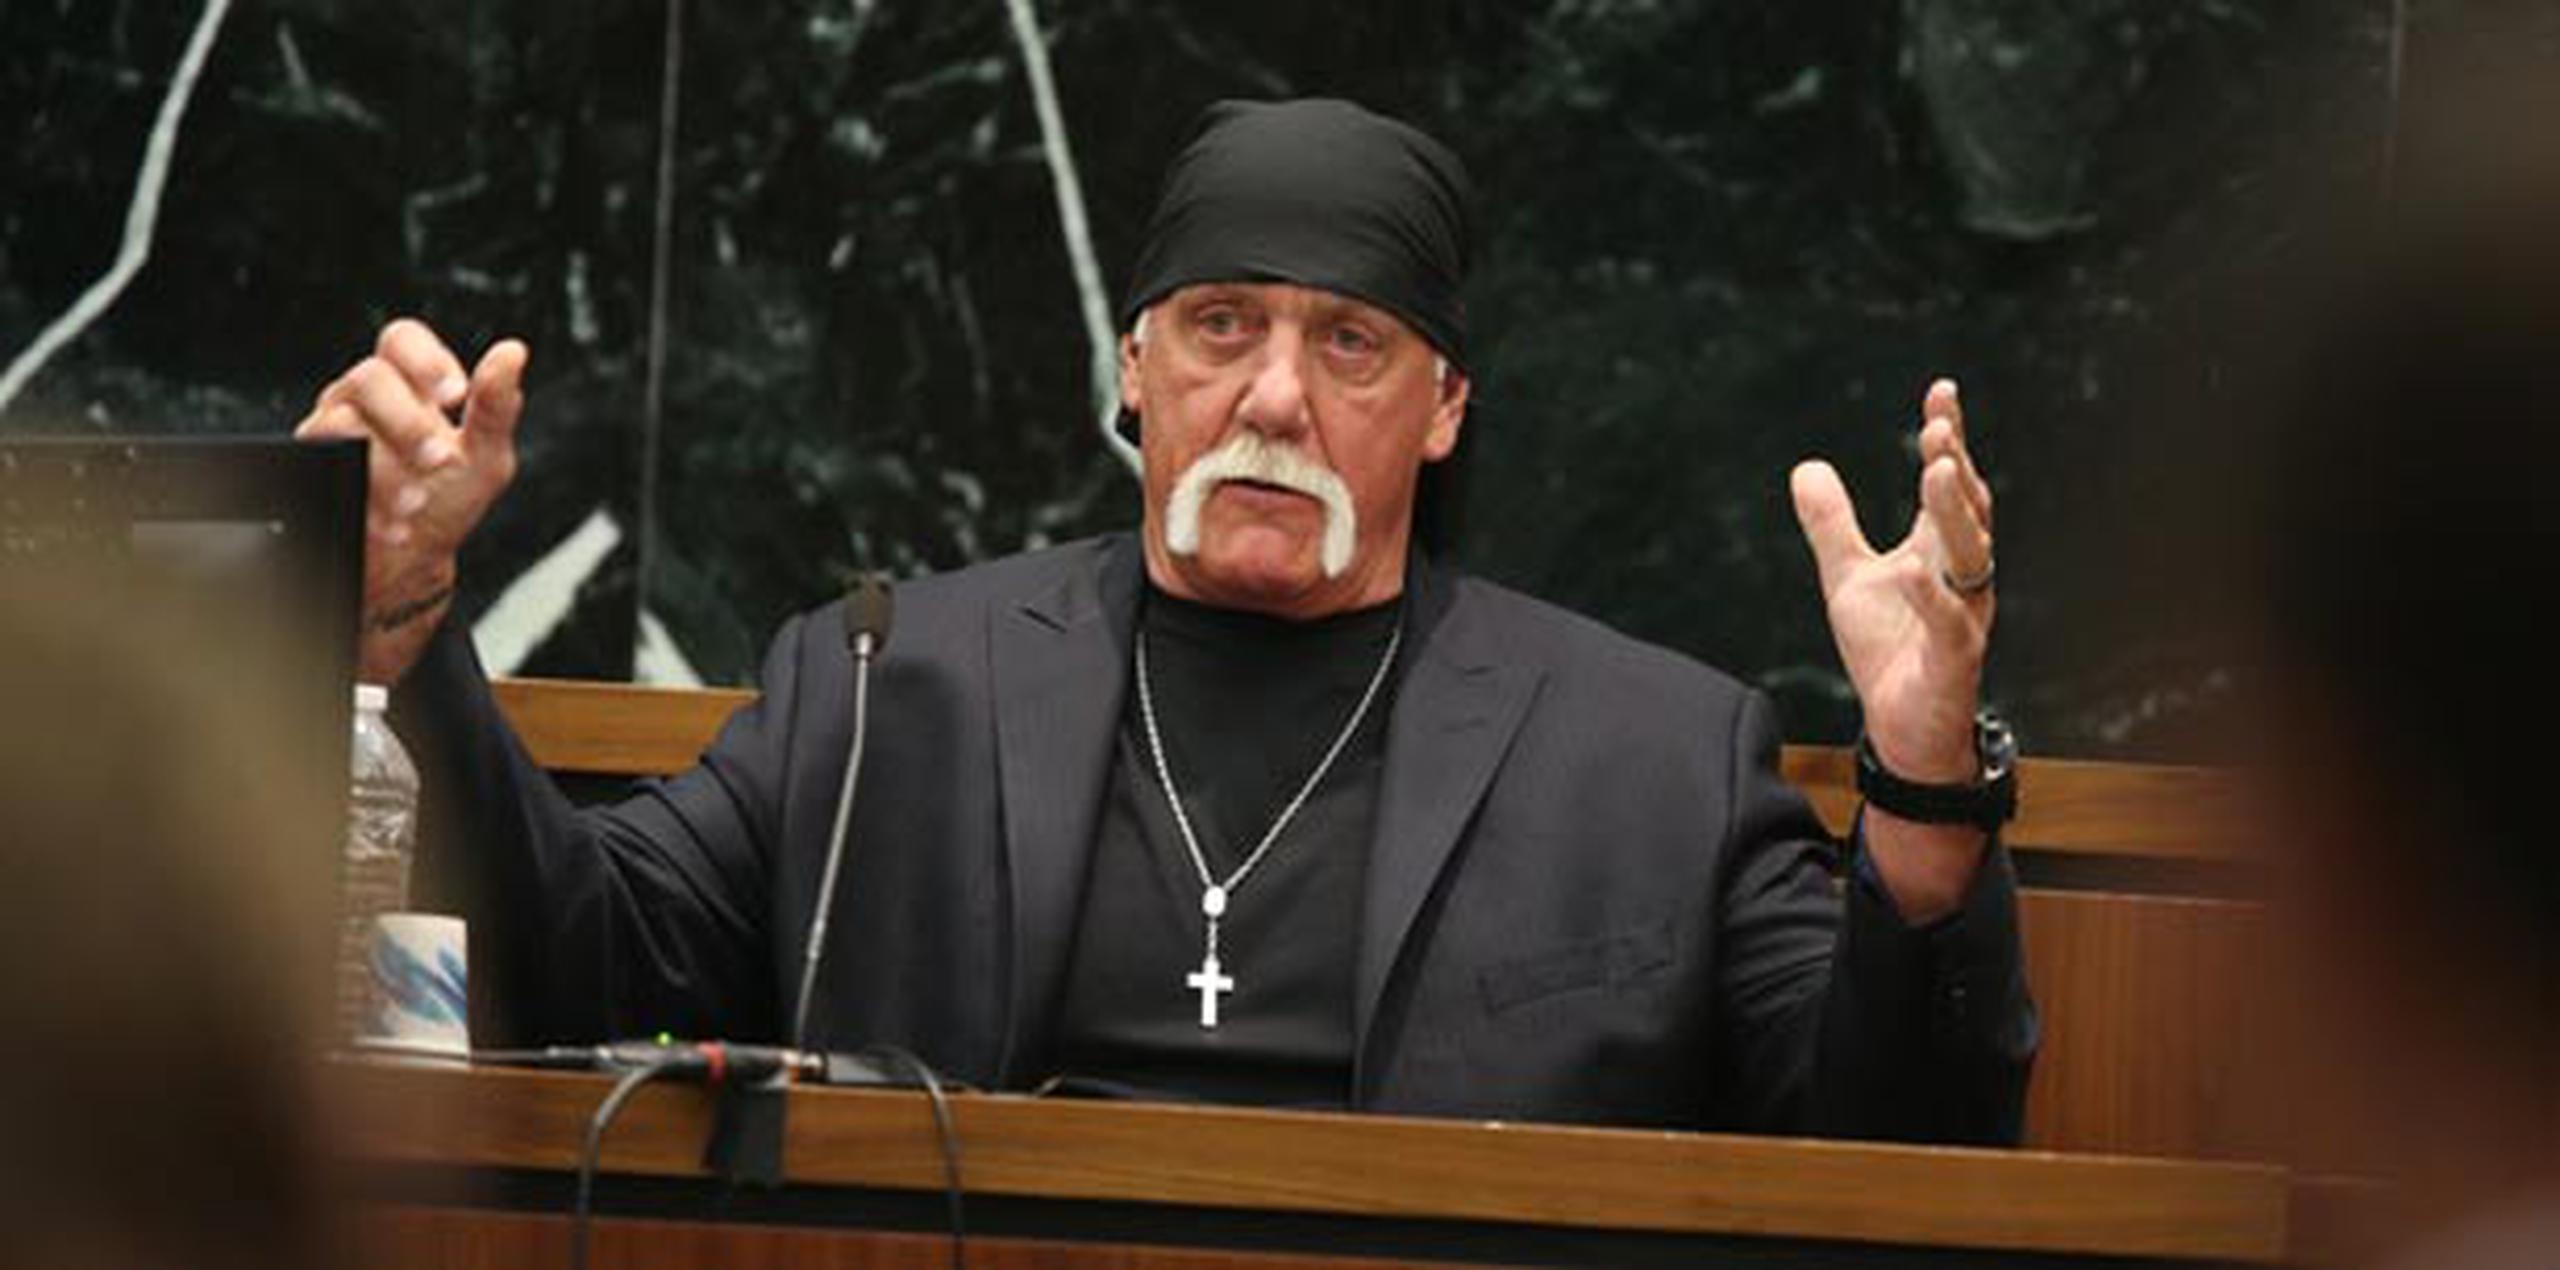 Hogan, cuyo verdadero nombre es Terry Bollea, demandó a Gawker por por difundir un video sexual.